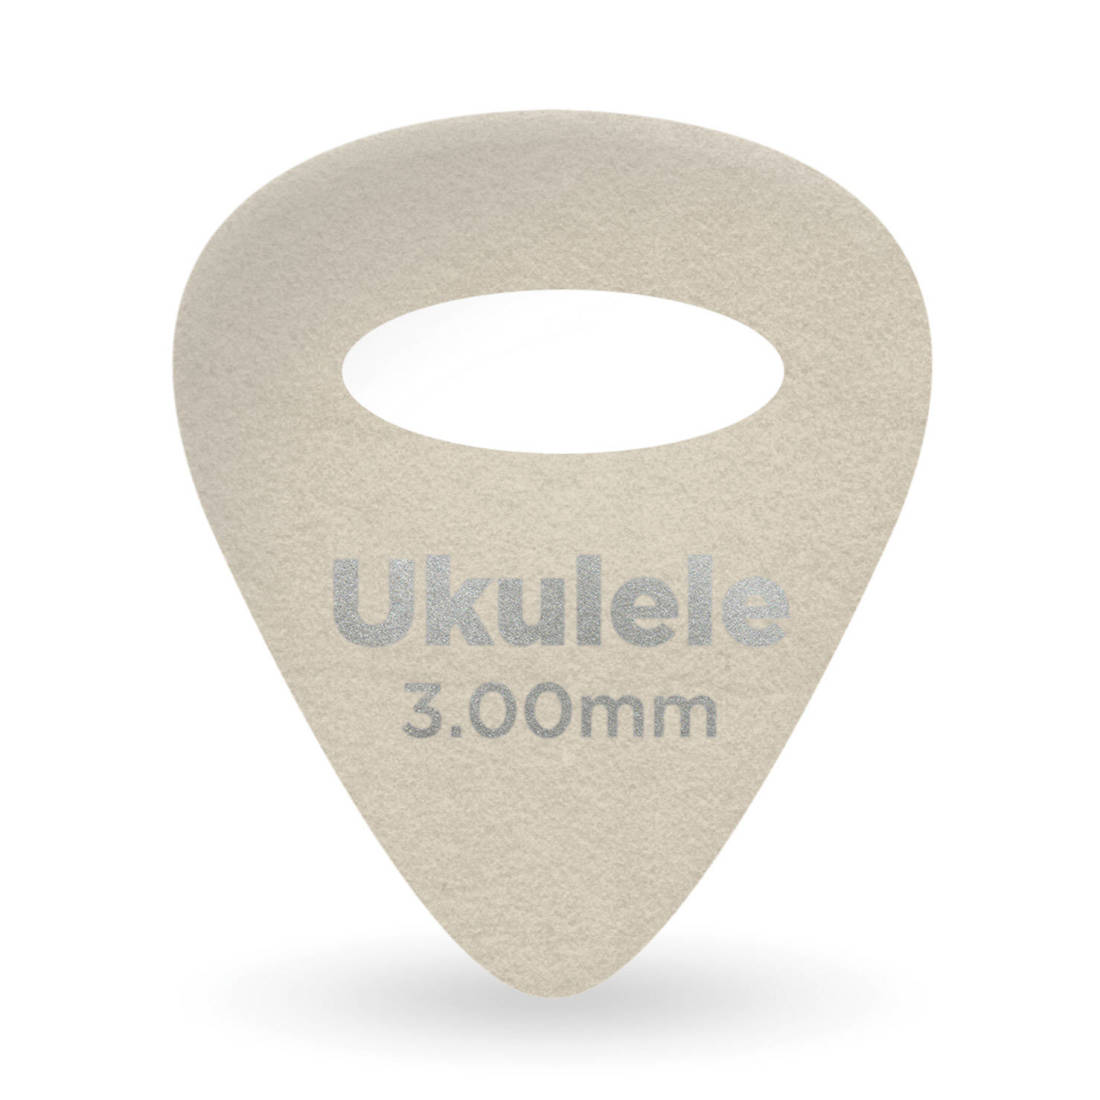 3.0mm Ukulele Felt Picks - 4-Pack